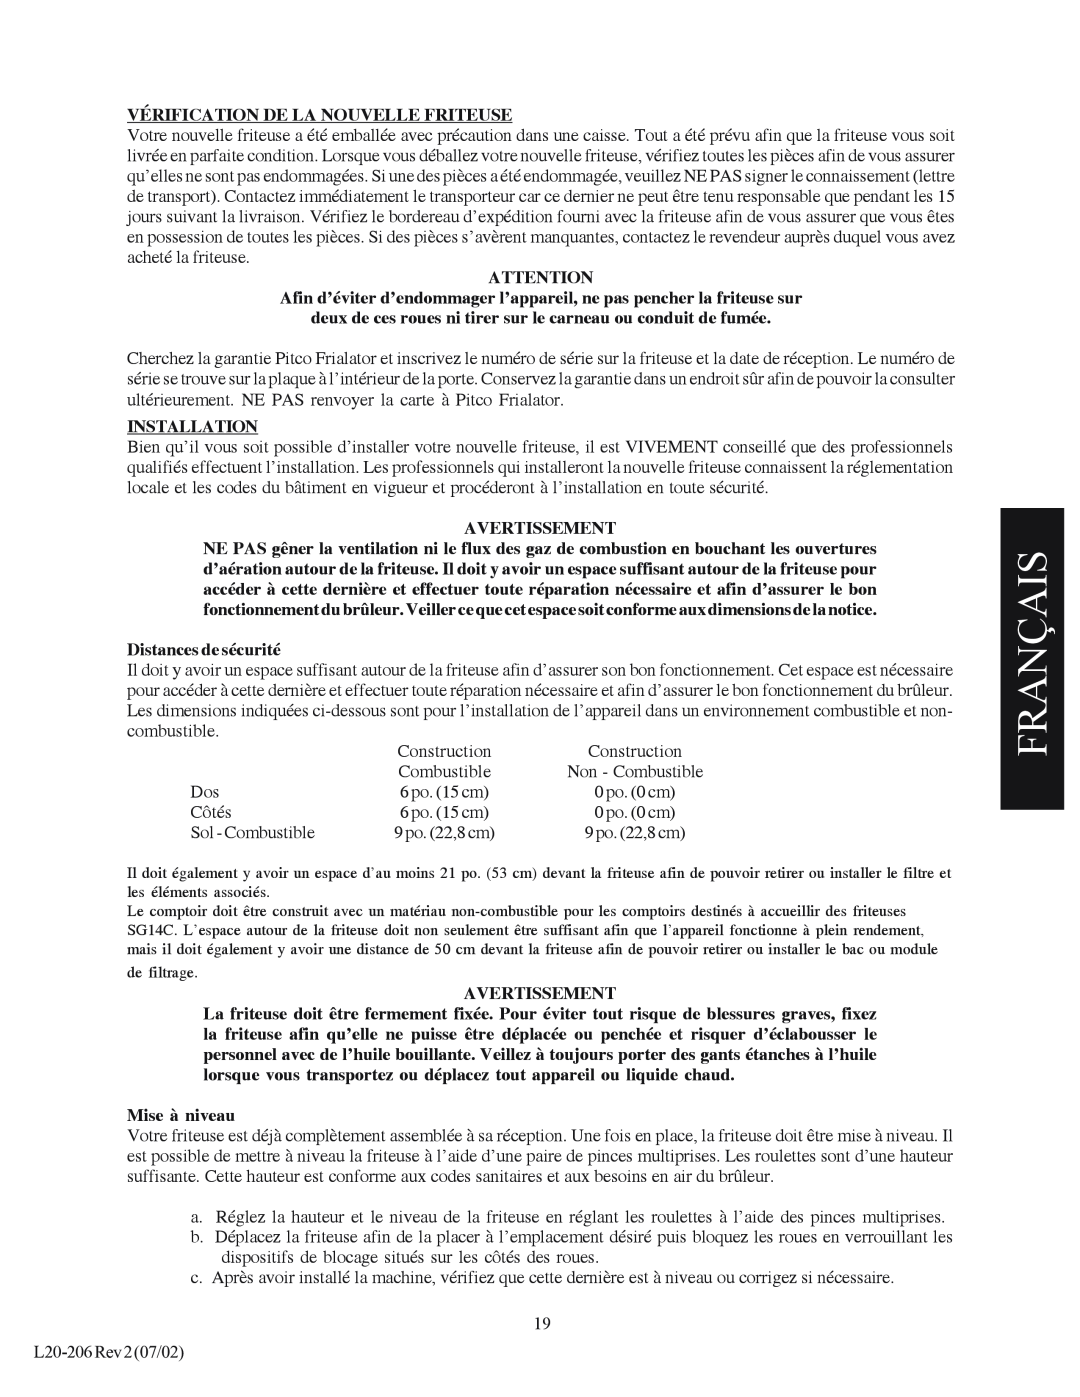 Pitco Frialator SG Français, Vérification De La Nouvelle Friteuse, Installation, Avertissement, Distances de sécurité 